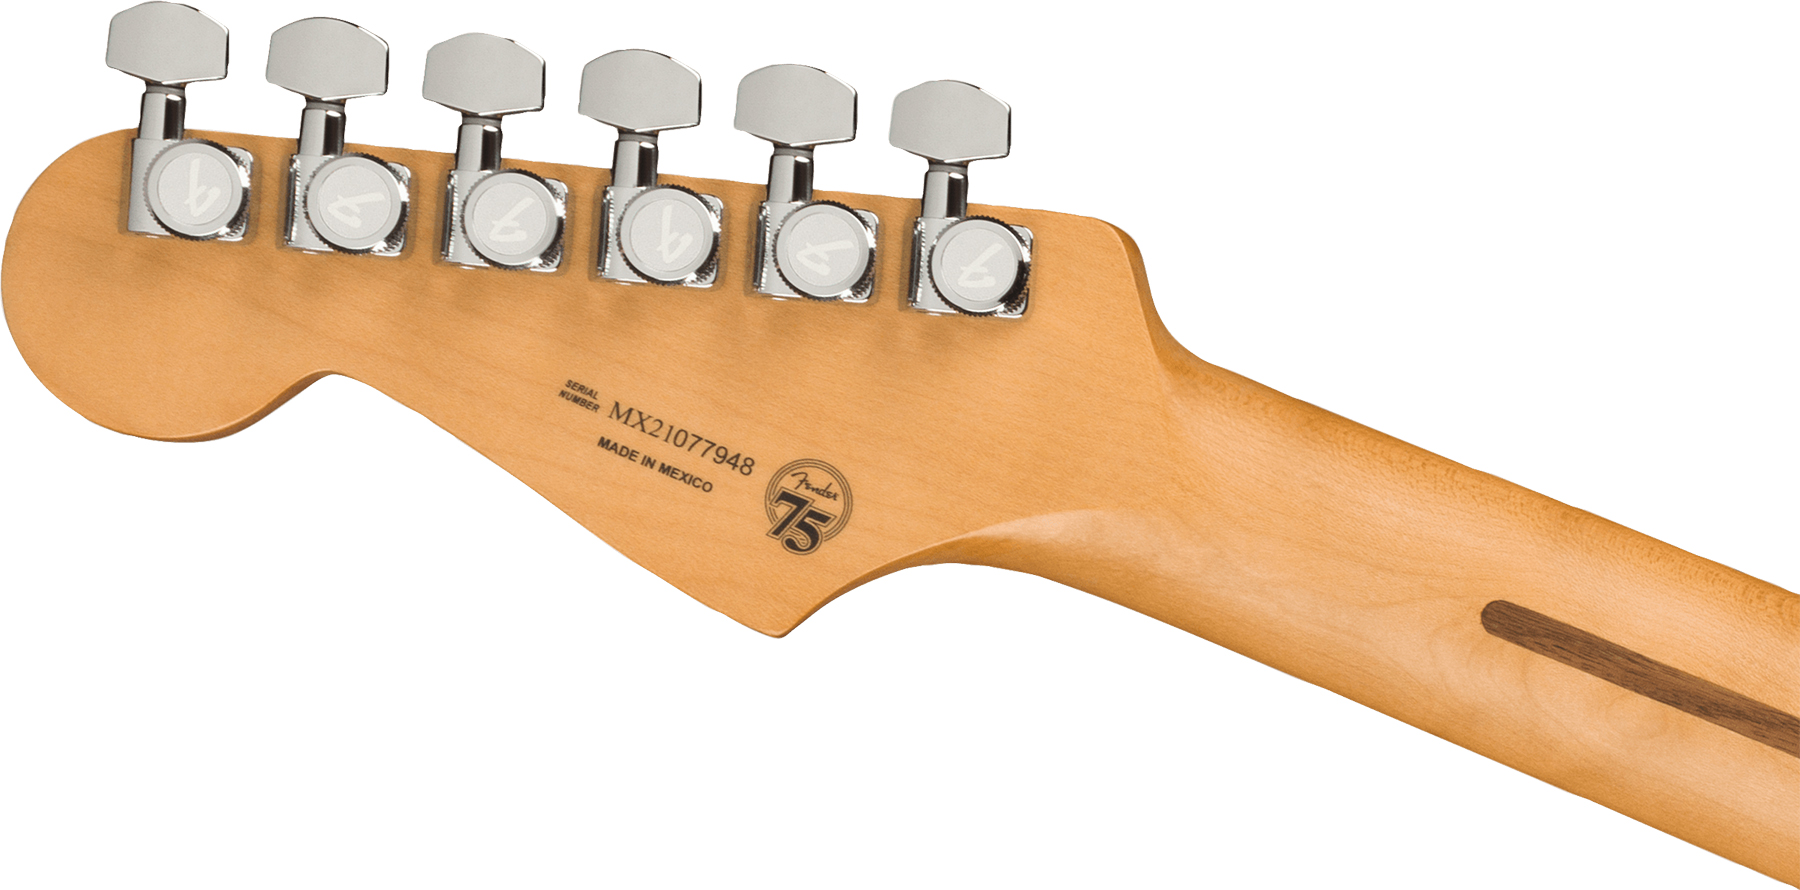 Fender Strat Player Plus Mex 3s Trem Pf - Opal Spark - E-Gitarre in Str-Form - Variation 3